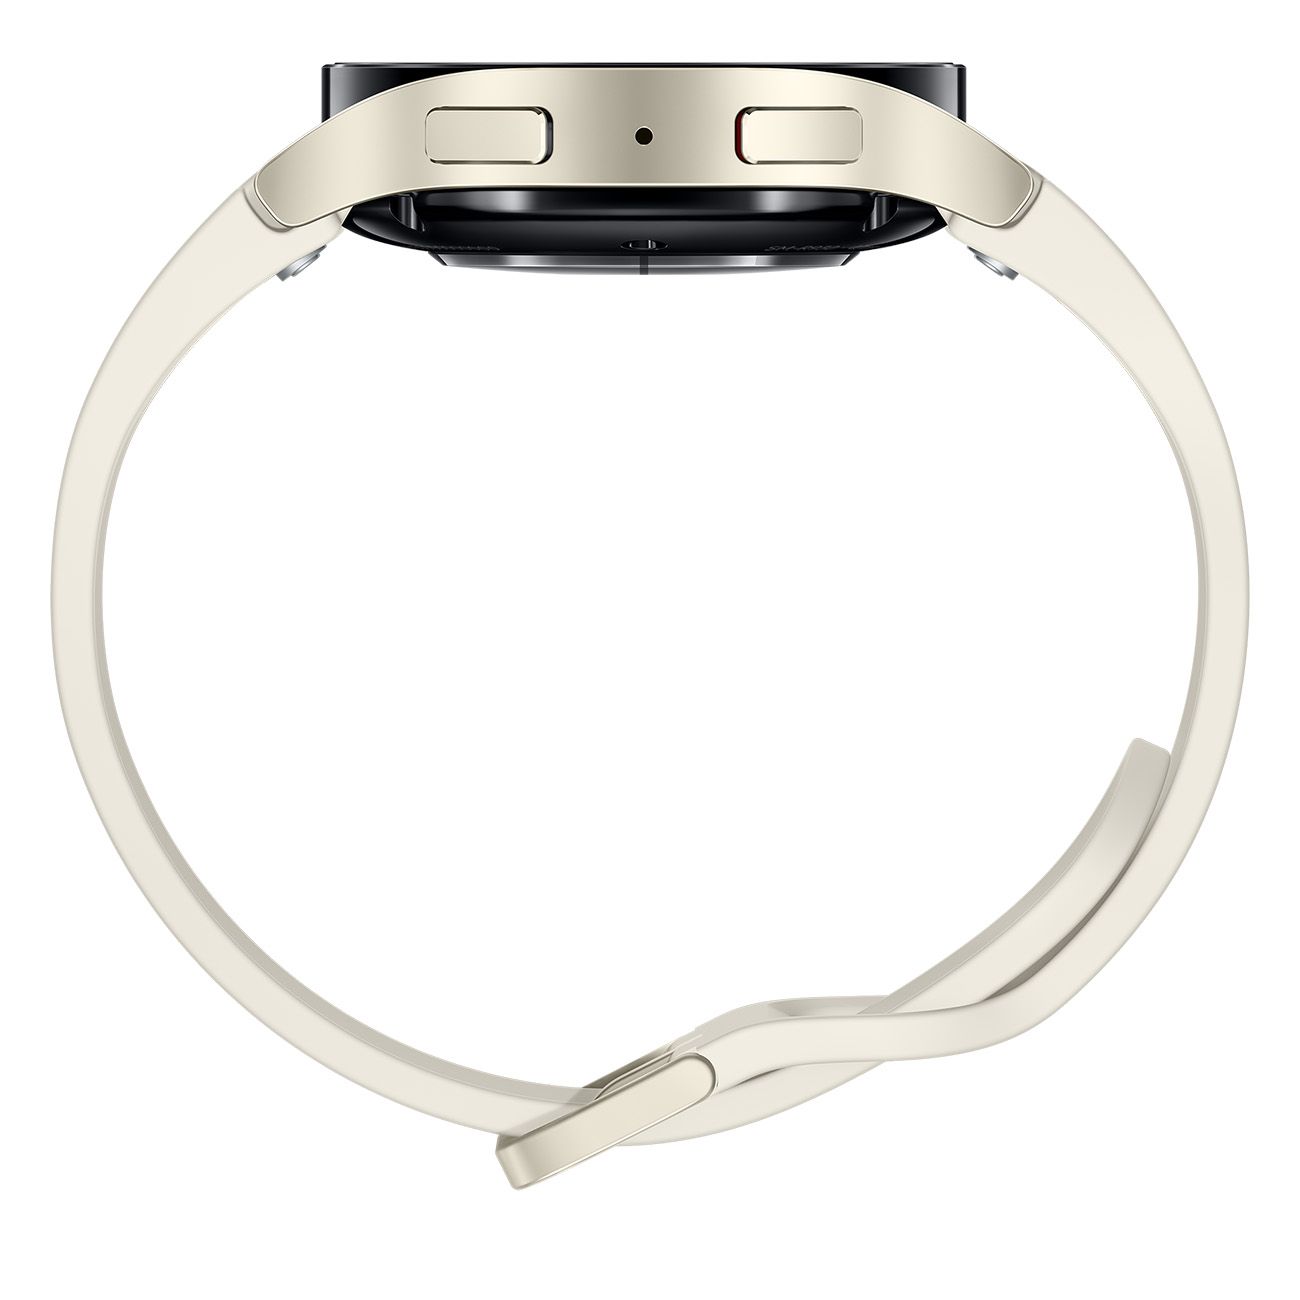 Samsung R930 Galaxy Watch6 Gold LTE (40mm) Smartwatch